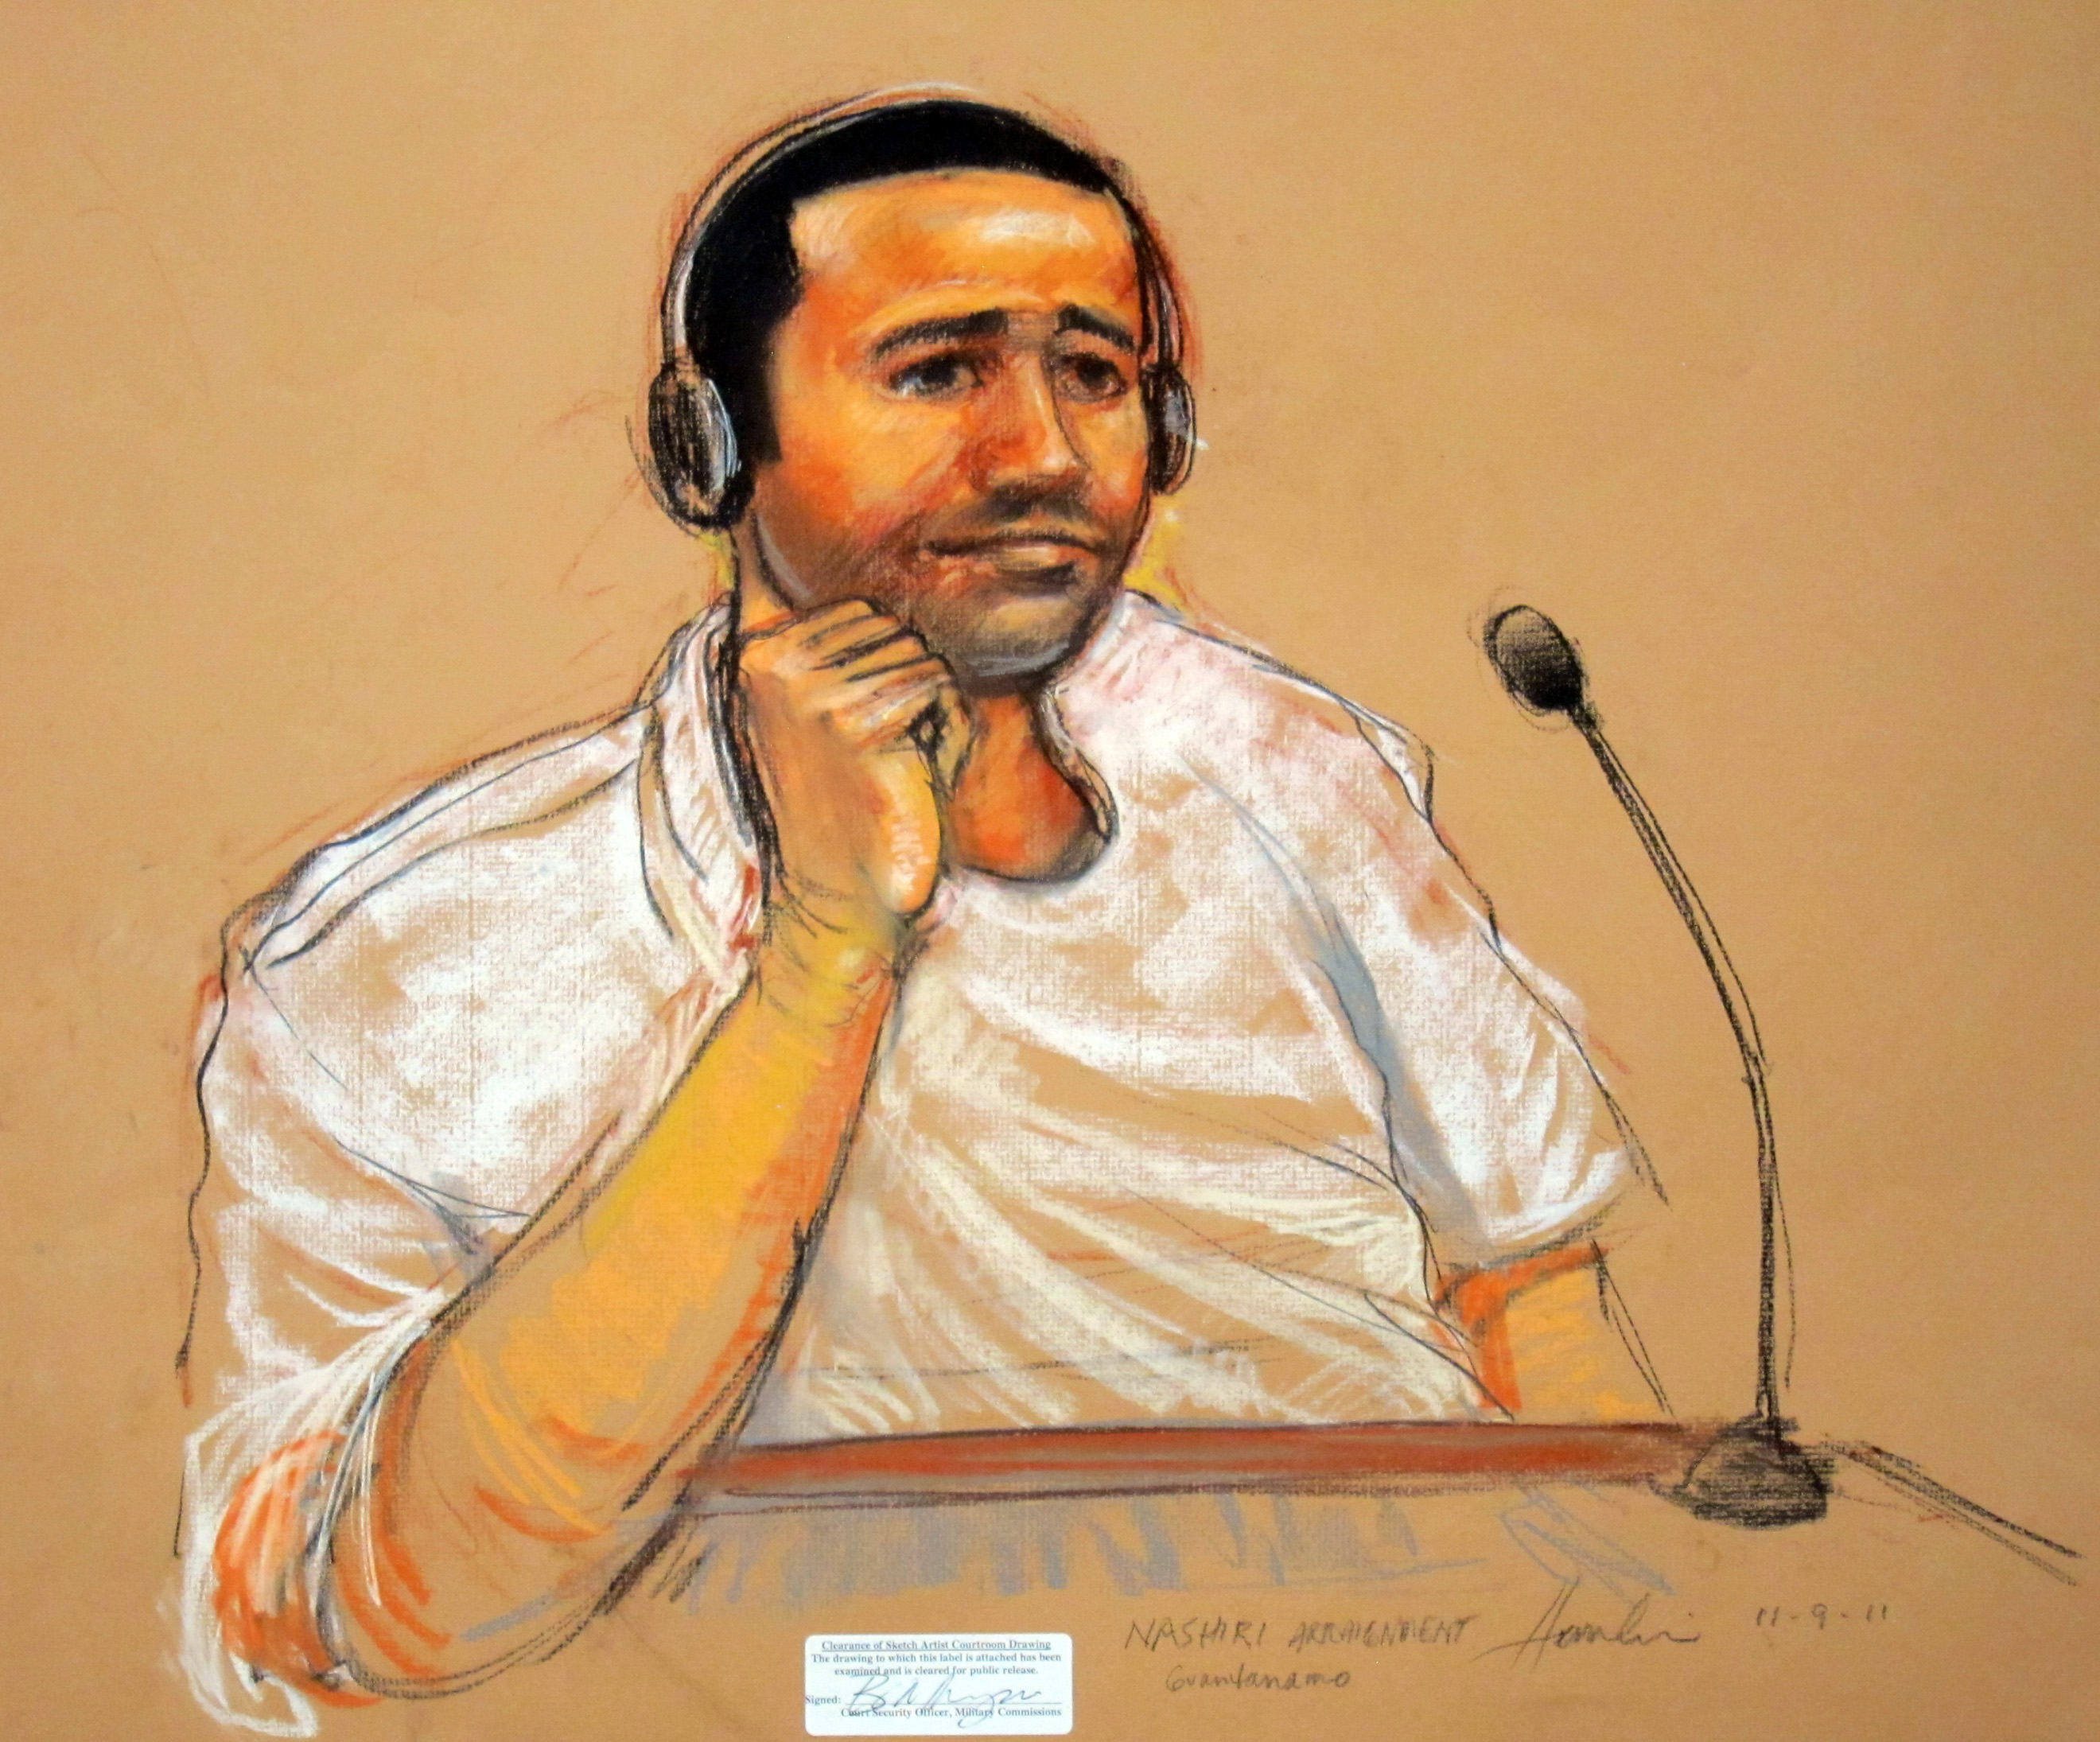 Endast en av de 171 kvarvarande fångarna - Abd al-Rahim al-Nashiri - väntas åtalas formellt. Huruvida Guantanamofängelset kommer att stängas ner eller inte finns det inga uppgifter om. Enligt den förordning Obama skrev under 2009 skulle Guantanomofängelse